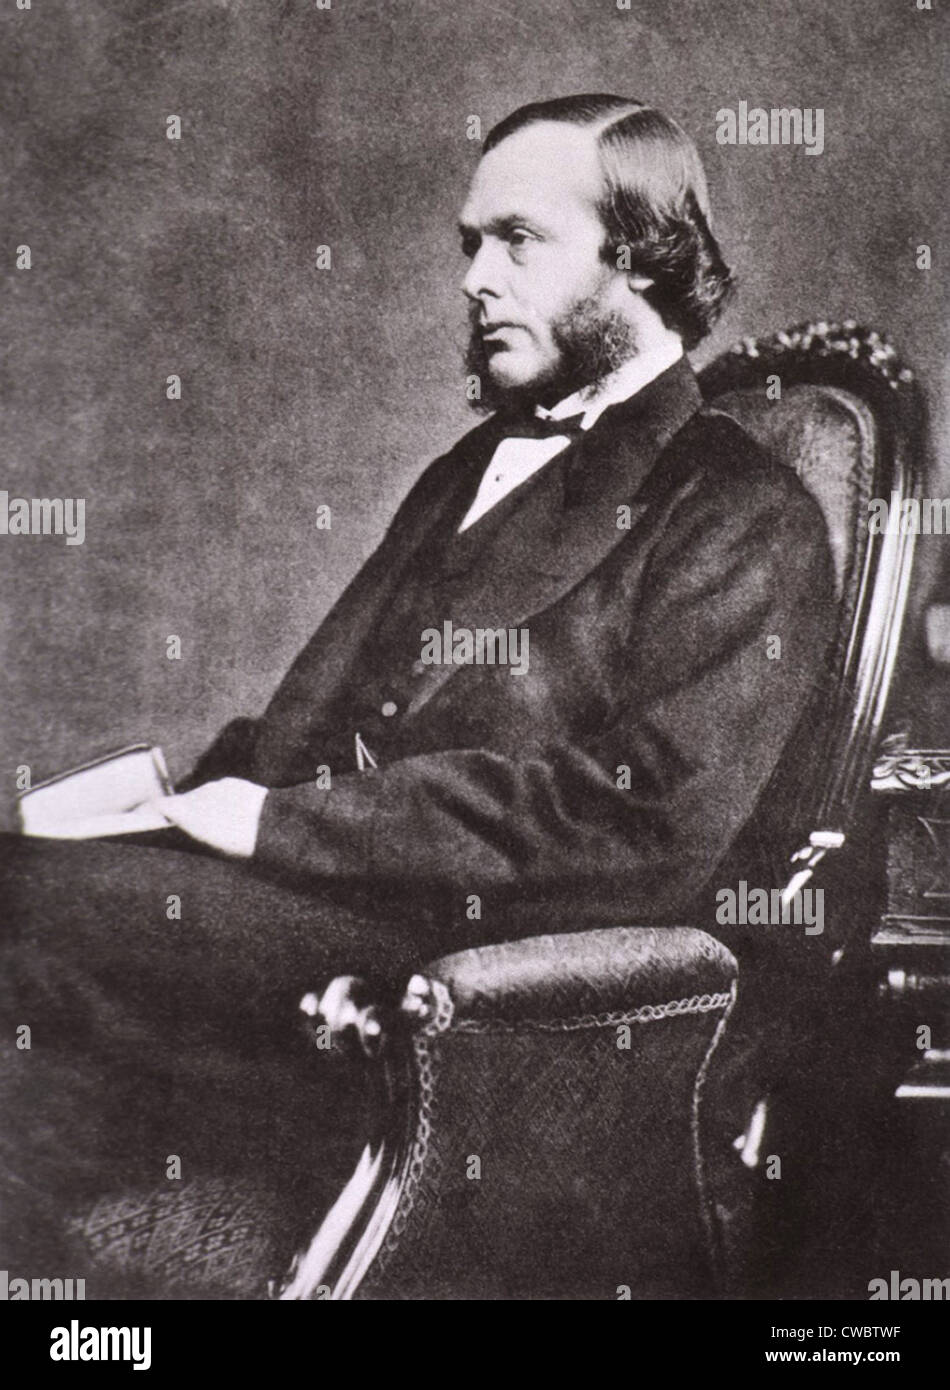 Joseph Lister (1827-1912), britischer Chirurg und Mediziner, Begründer der antiseptischen Chirurgie war. Foto von Emery Stockfoto